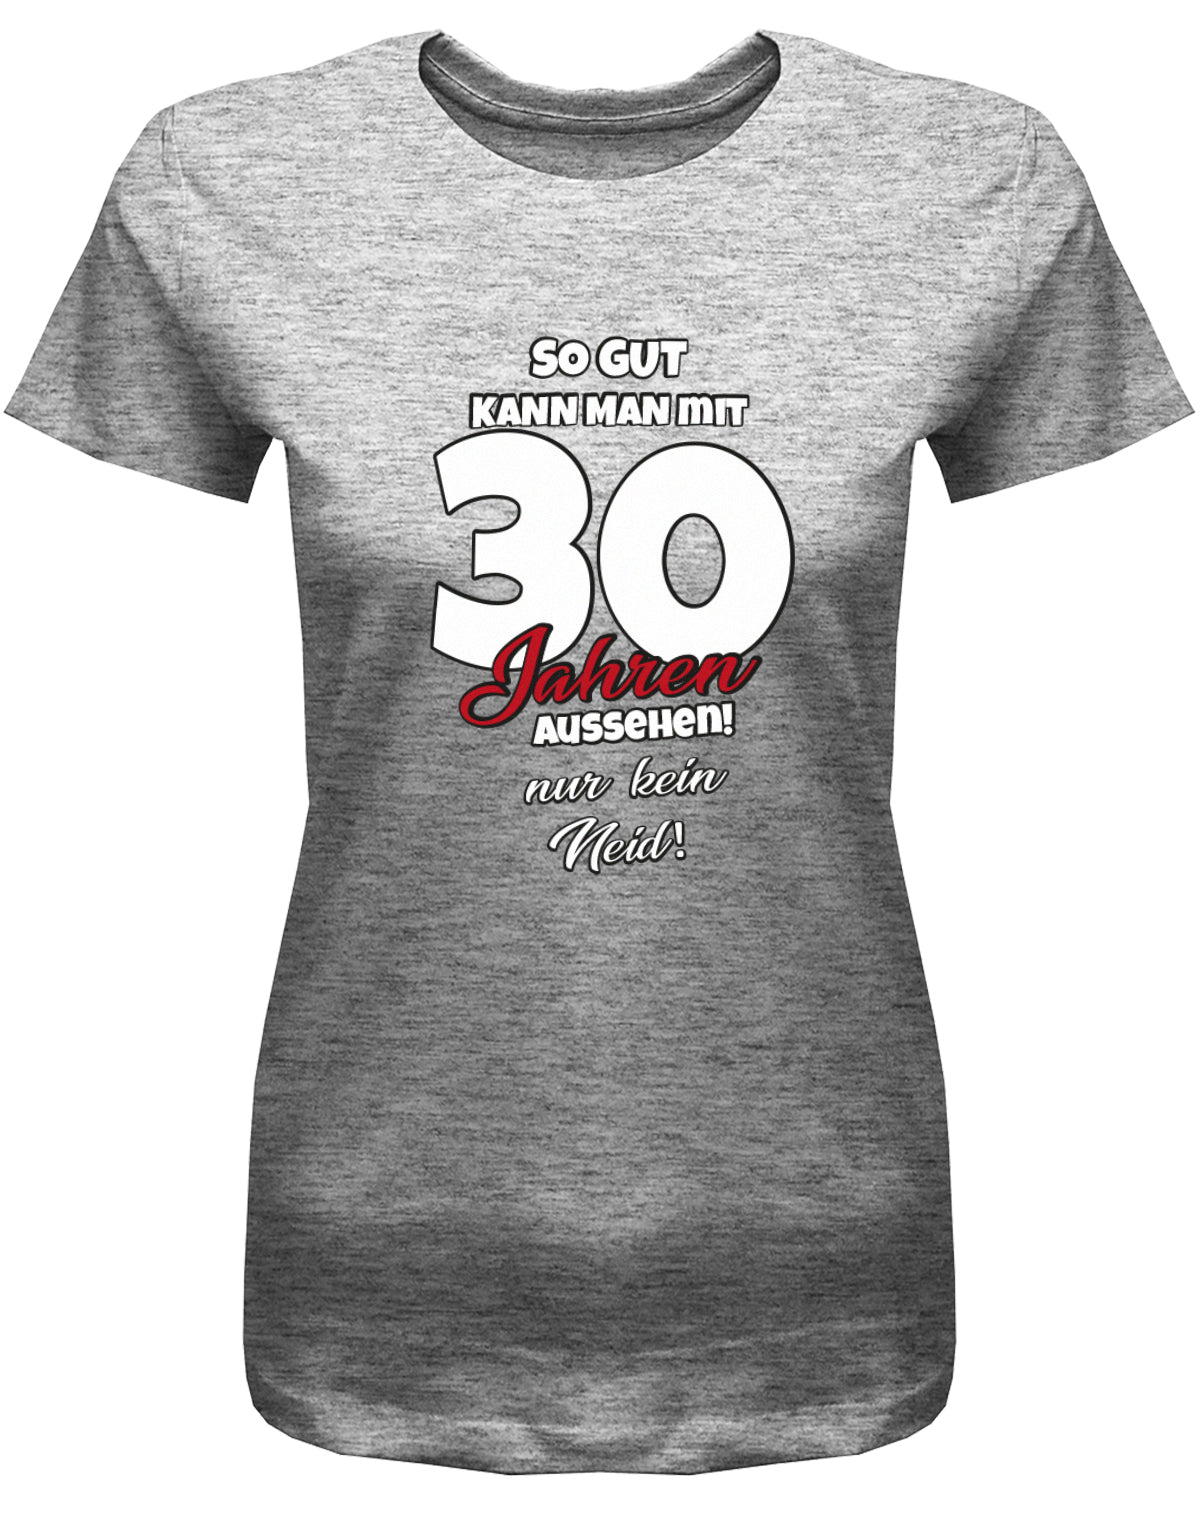 Lustiges T-Shirt zum 30 Geburtstag für die Frau Bedruckt mit So gut kann man mit 30 Jahren aussehen! Nur kein Neid! grau